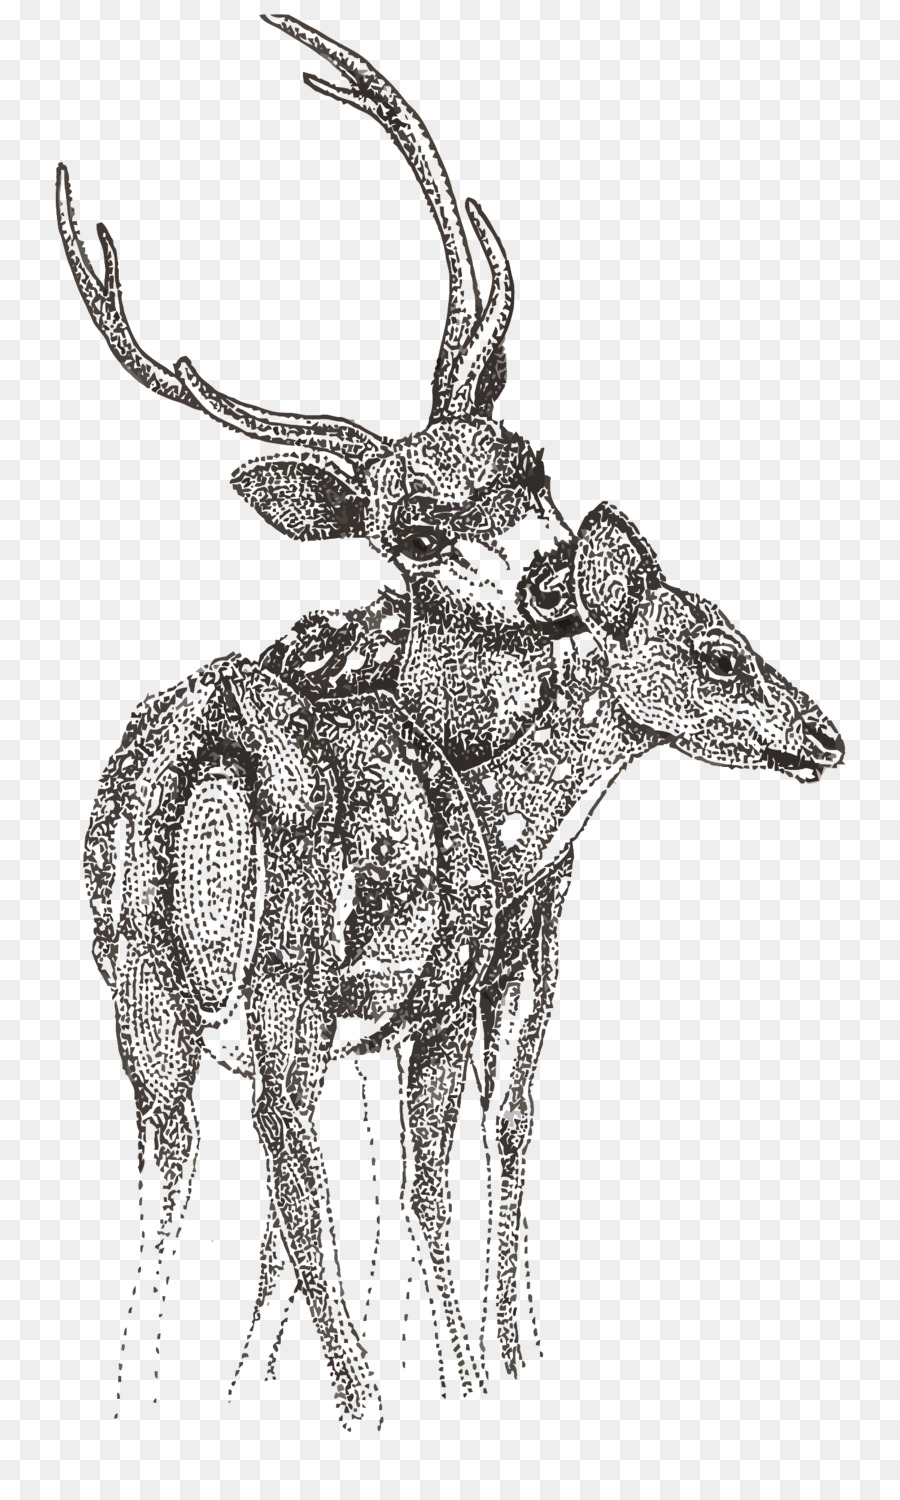 Reindeer Cartoon